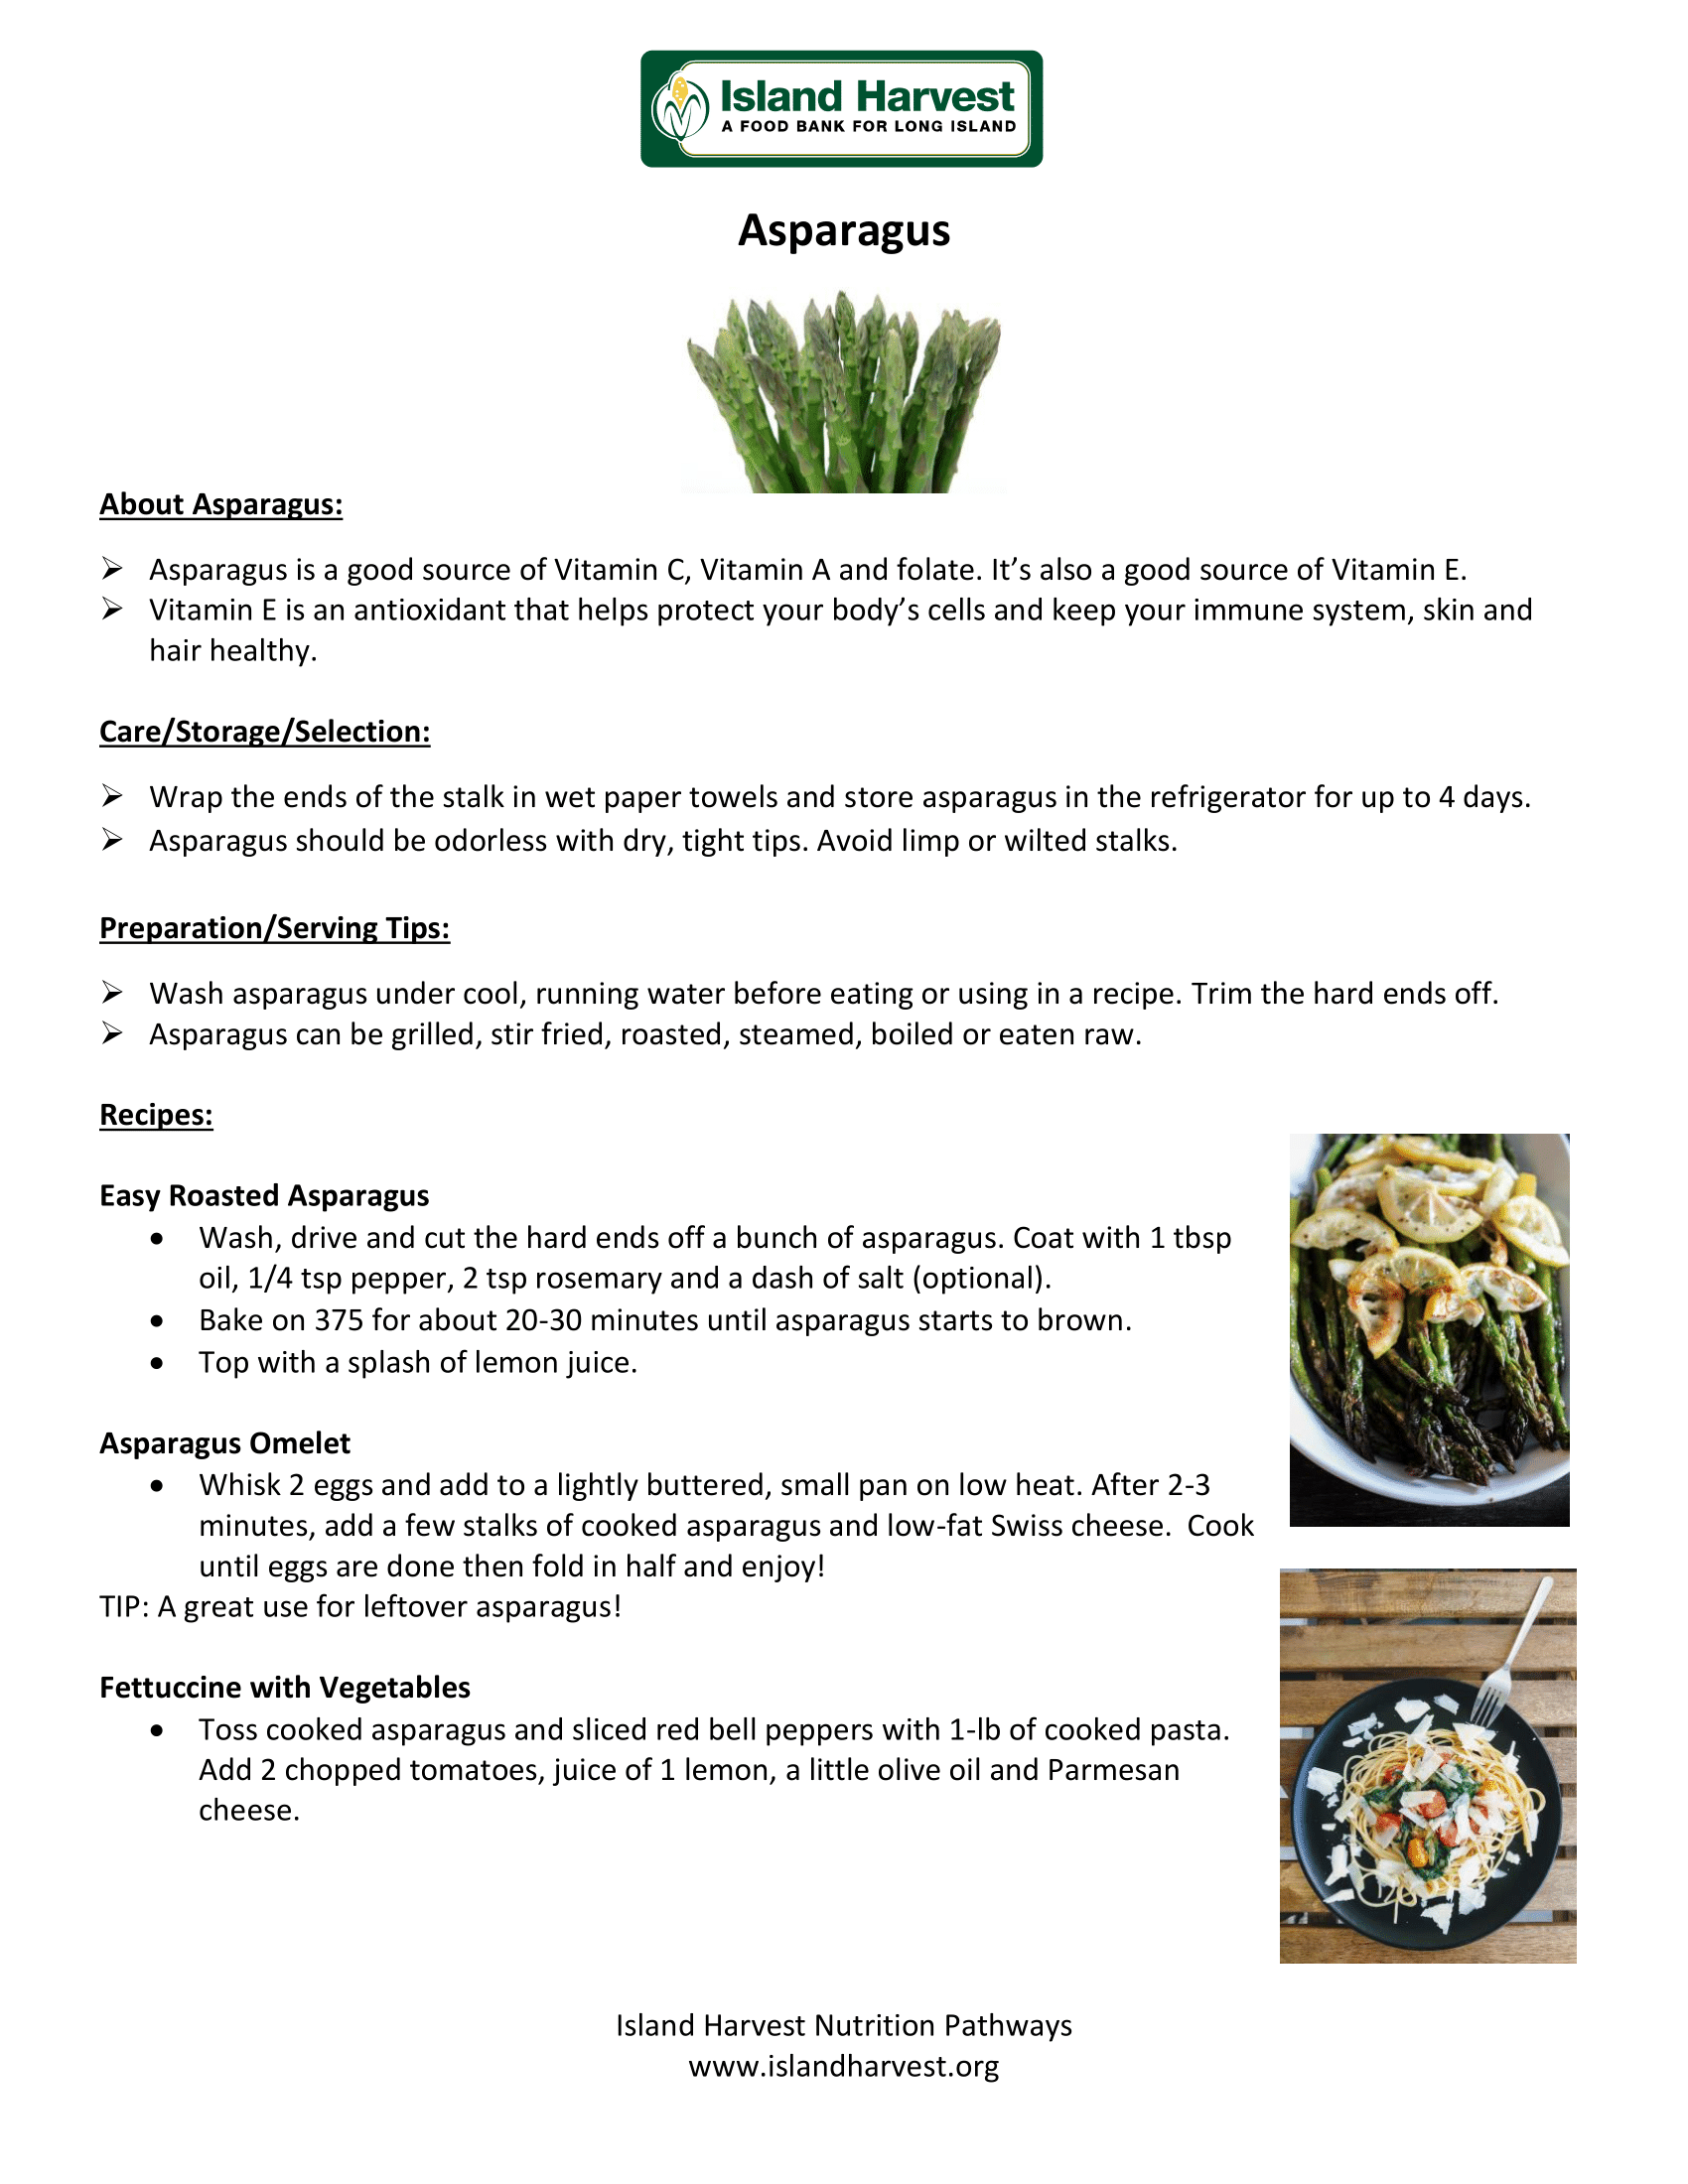 Asparagus Tips_Recipes-1